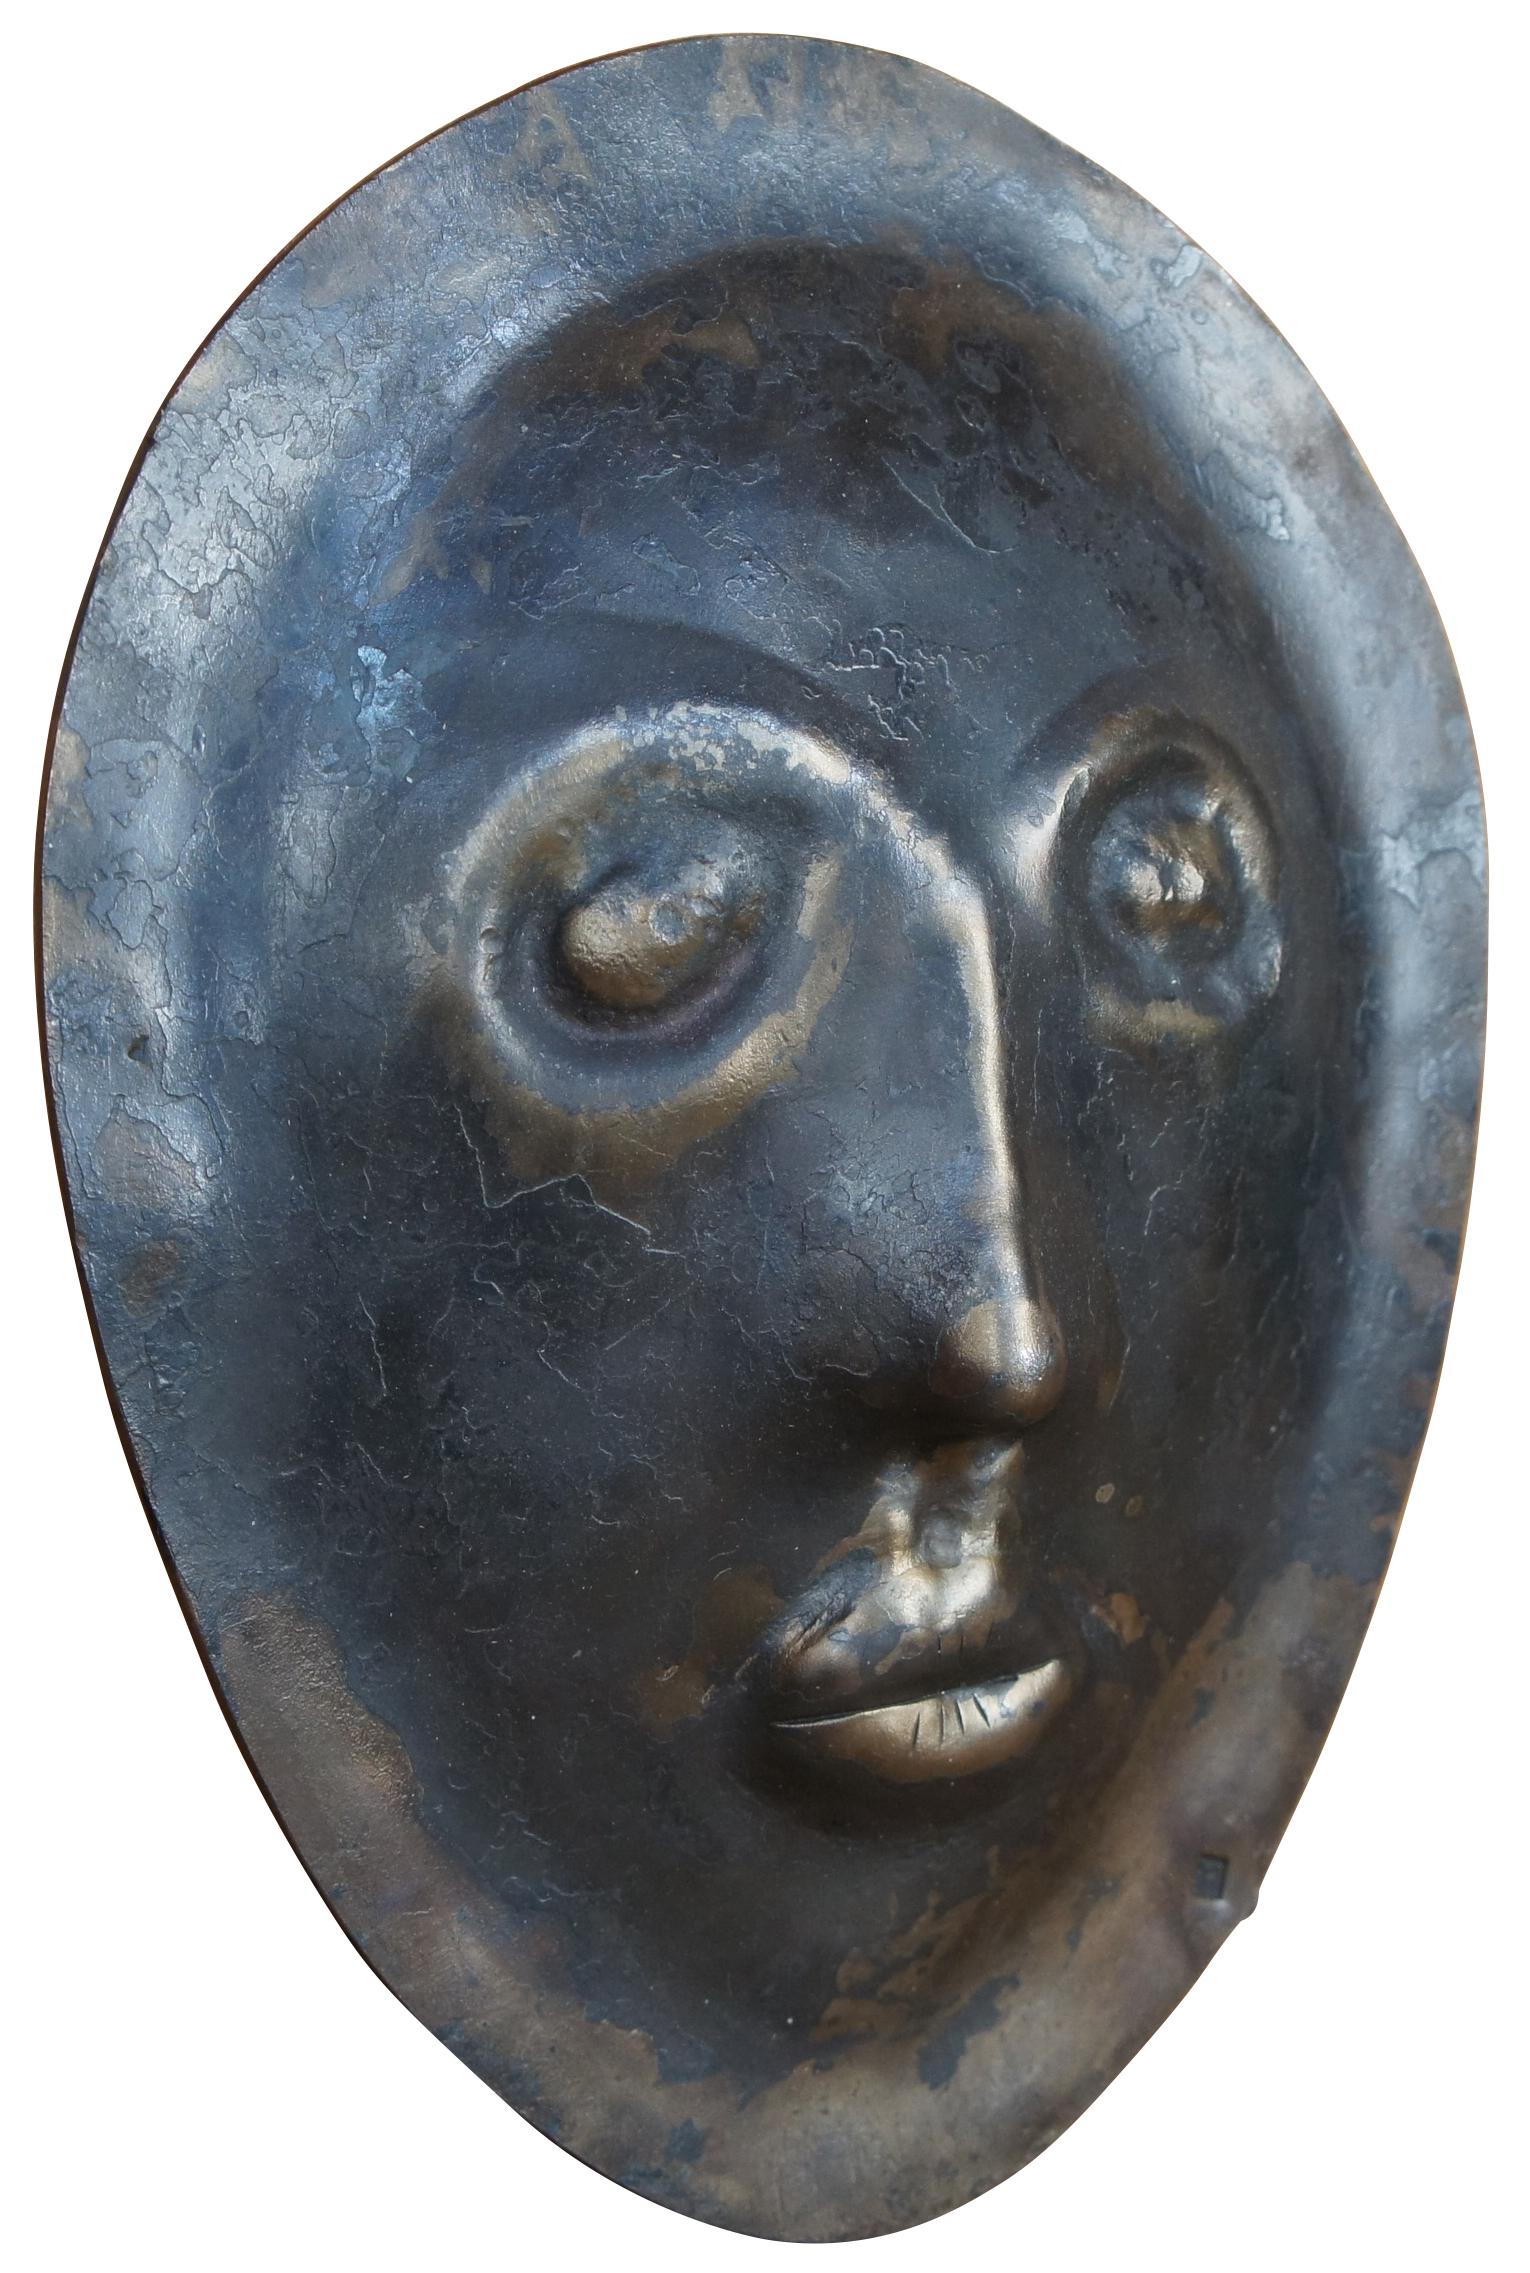 Moderne Skulptur aus schwerem Eisen mit abgeflachtem, ausdruckslosem Gesicht als Totenmaske.  Gestempelt TM.